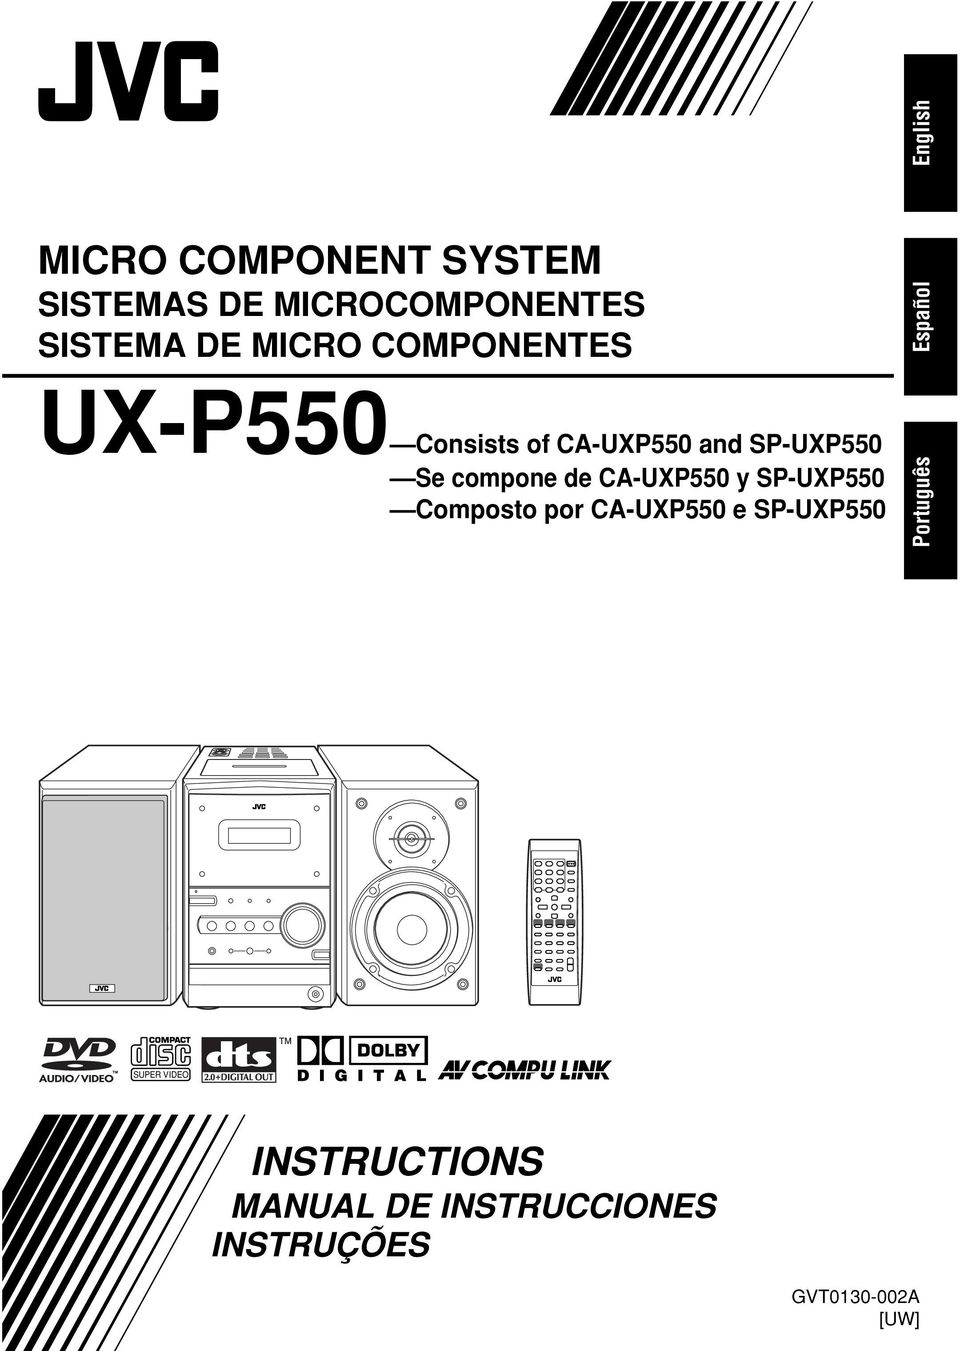 compone de CA-UXP550 y SP-UXP550 Composto por CA-UXP550 e SP-UXP550